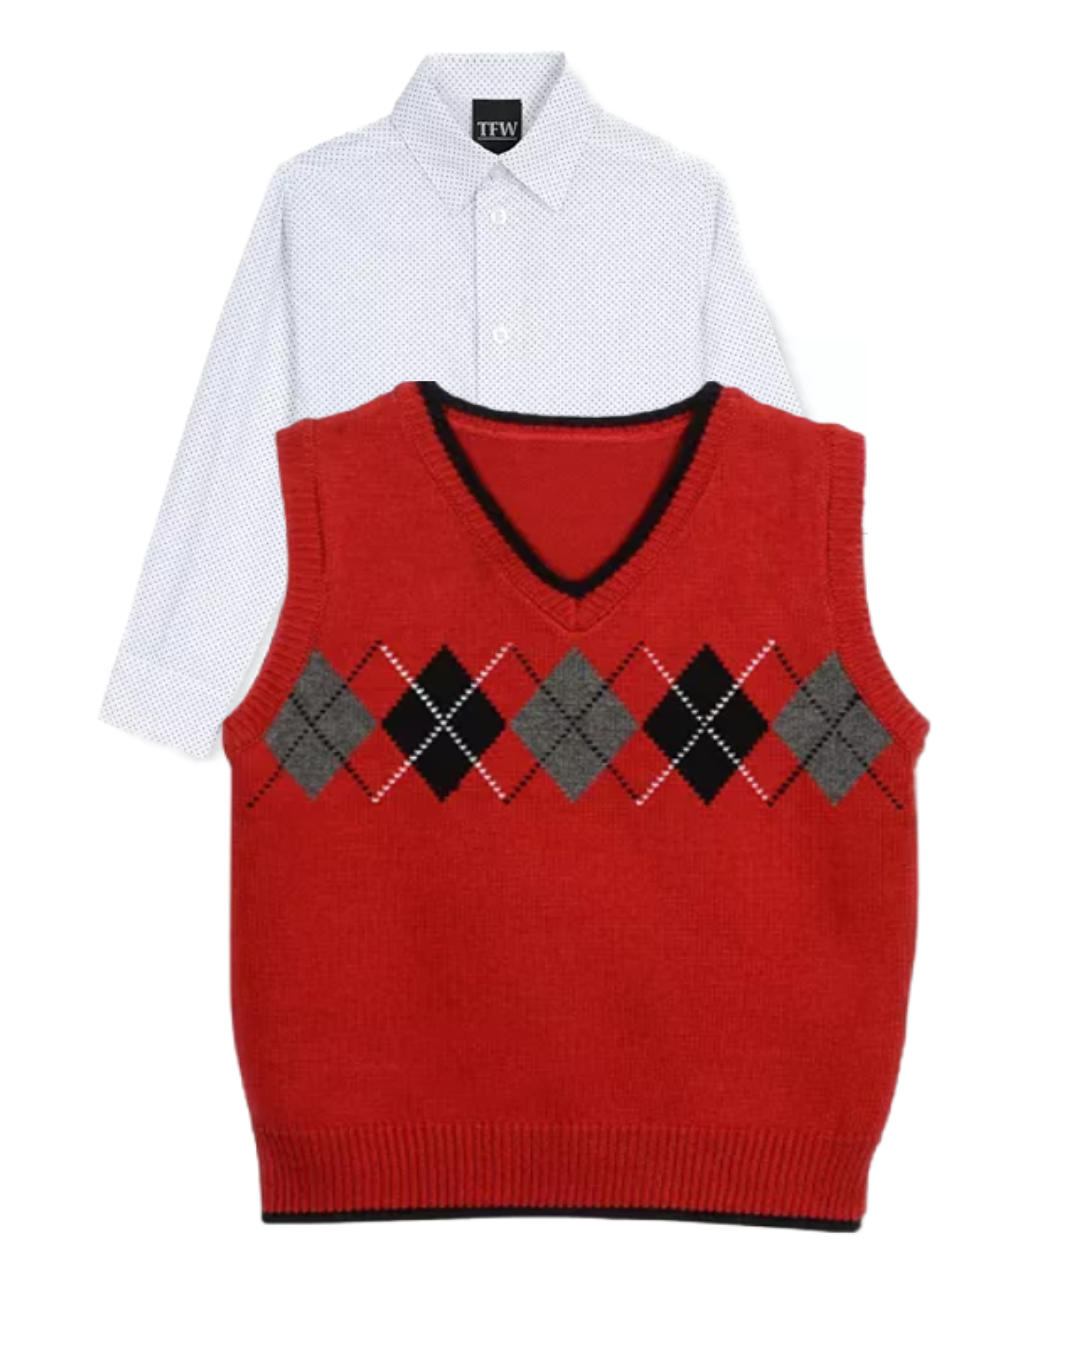 TFW Toddler Boys 2-Pieces Argyle Sweater Vest & Shirt Set